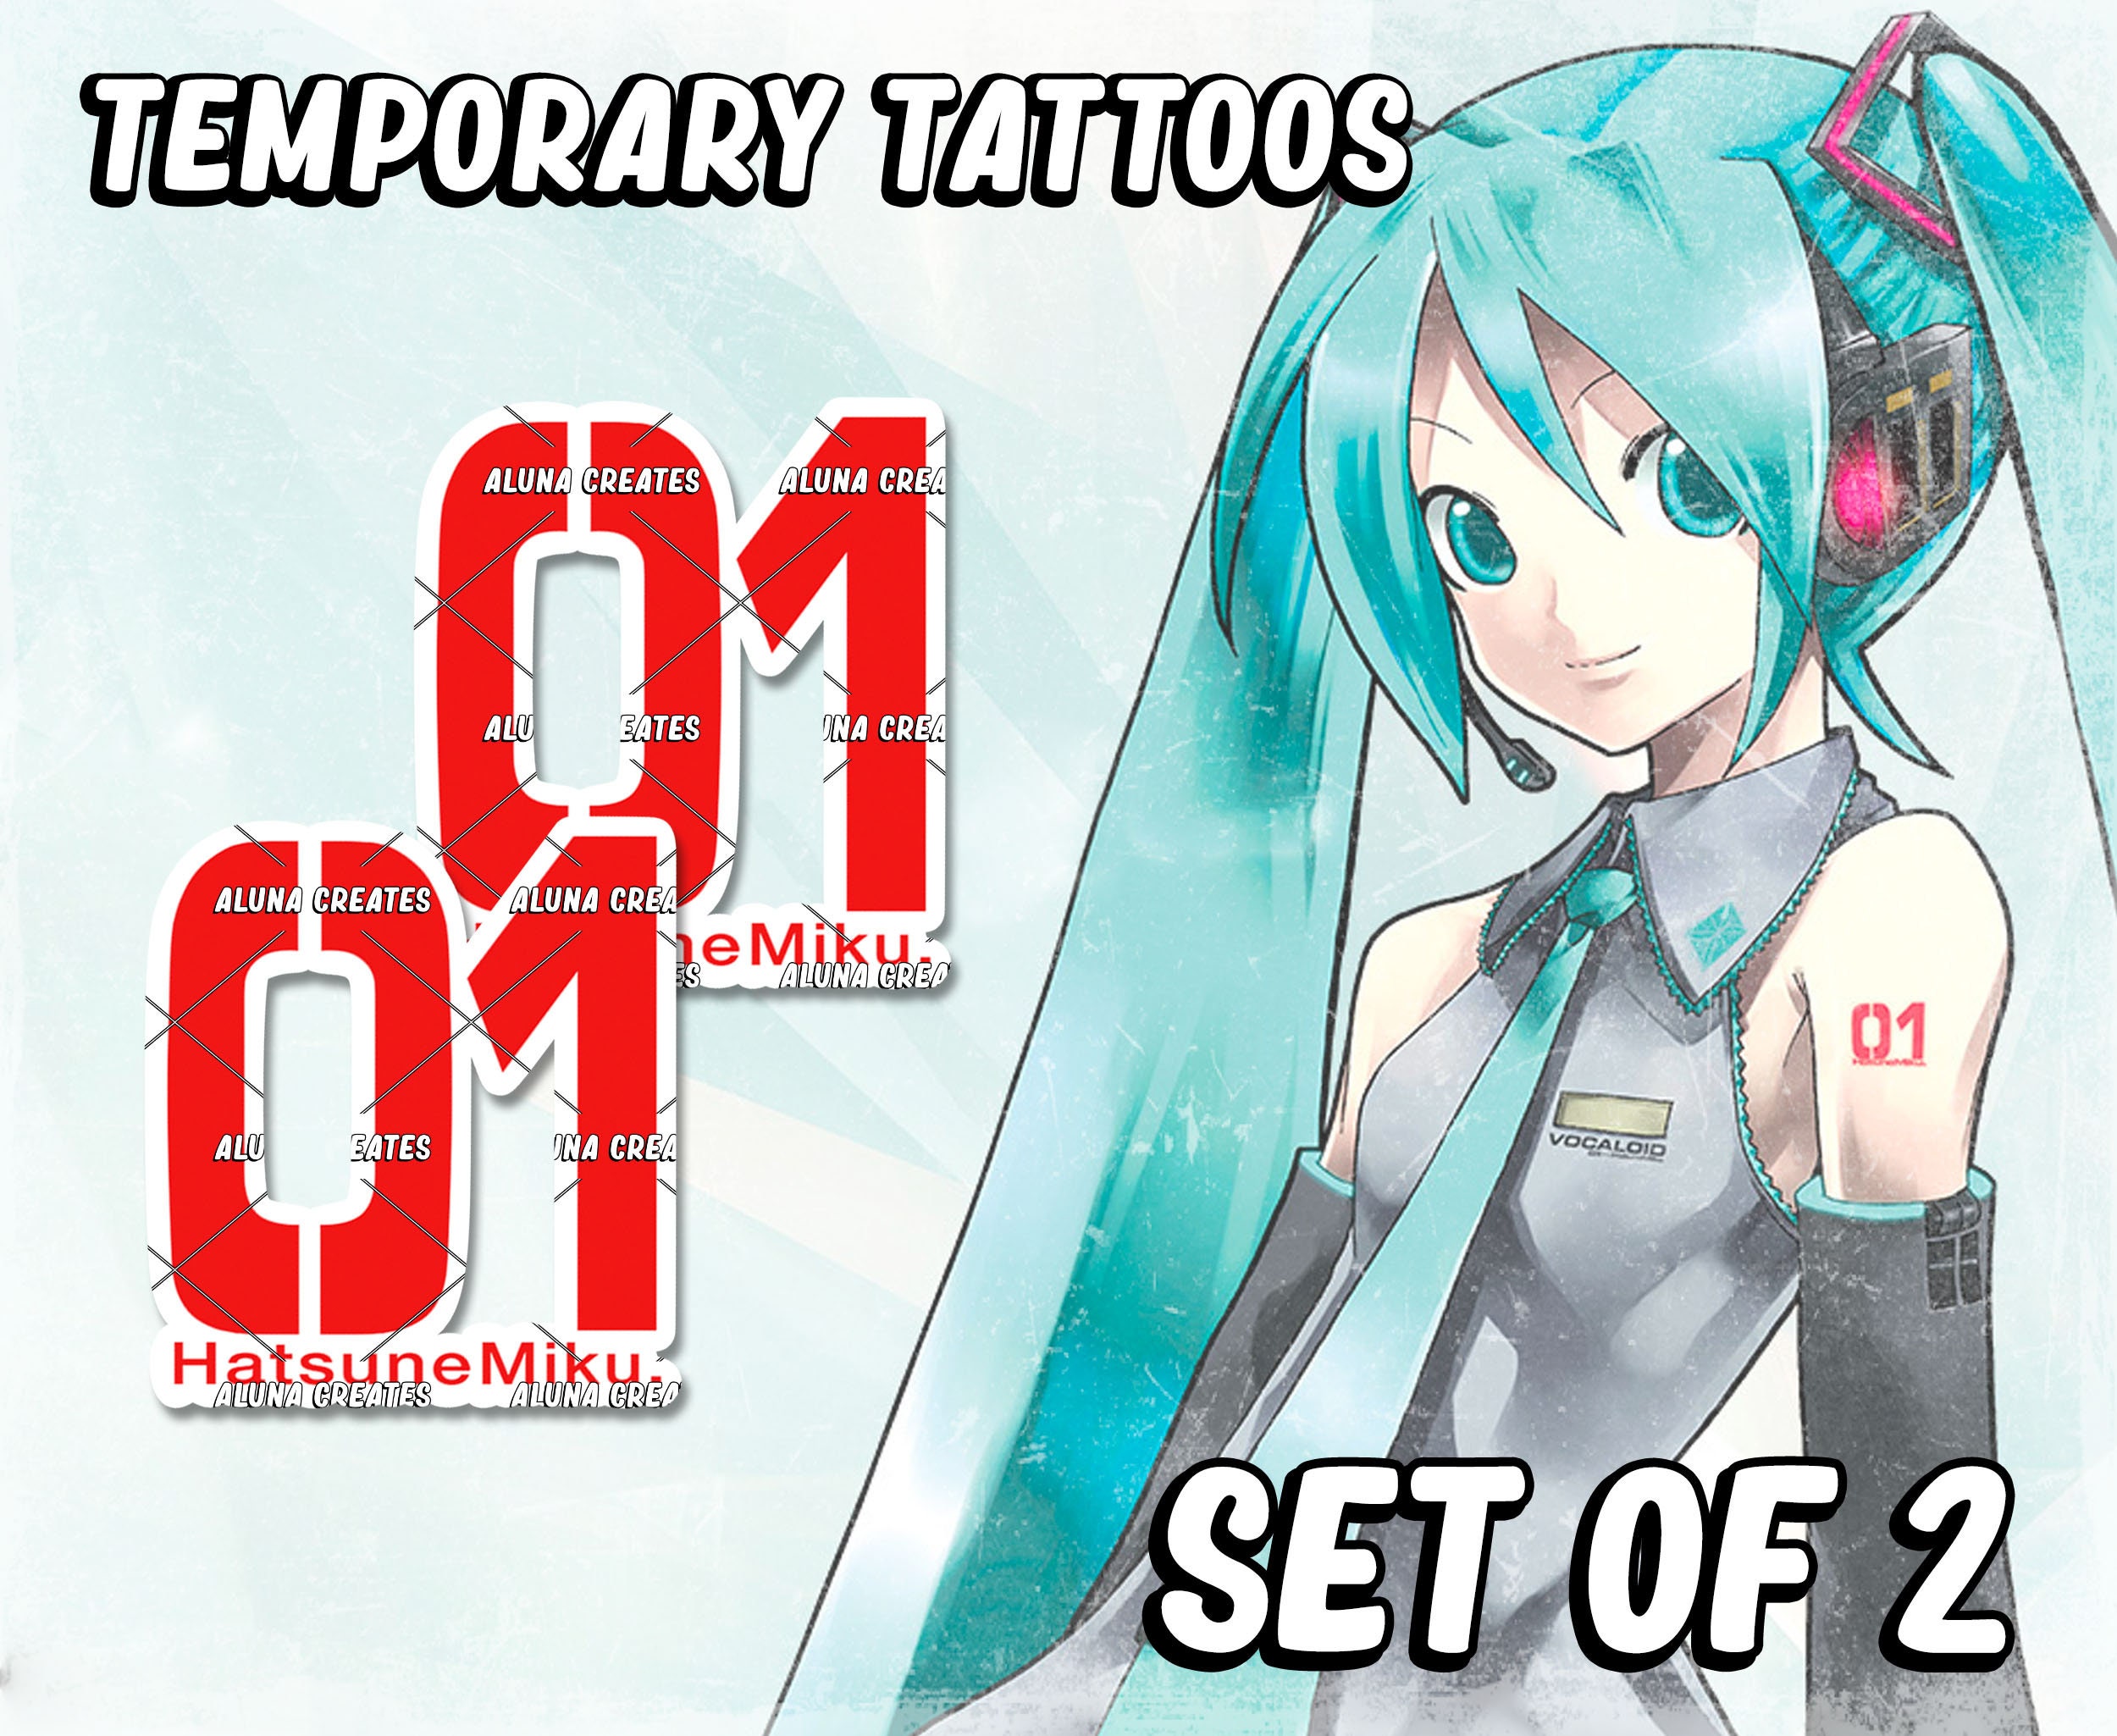 Share 74 hatsune miku tattoo 01 super hot  ineteachers